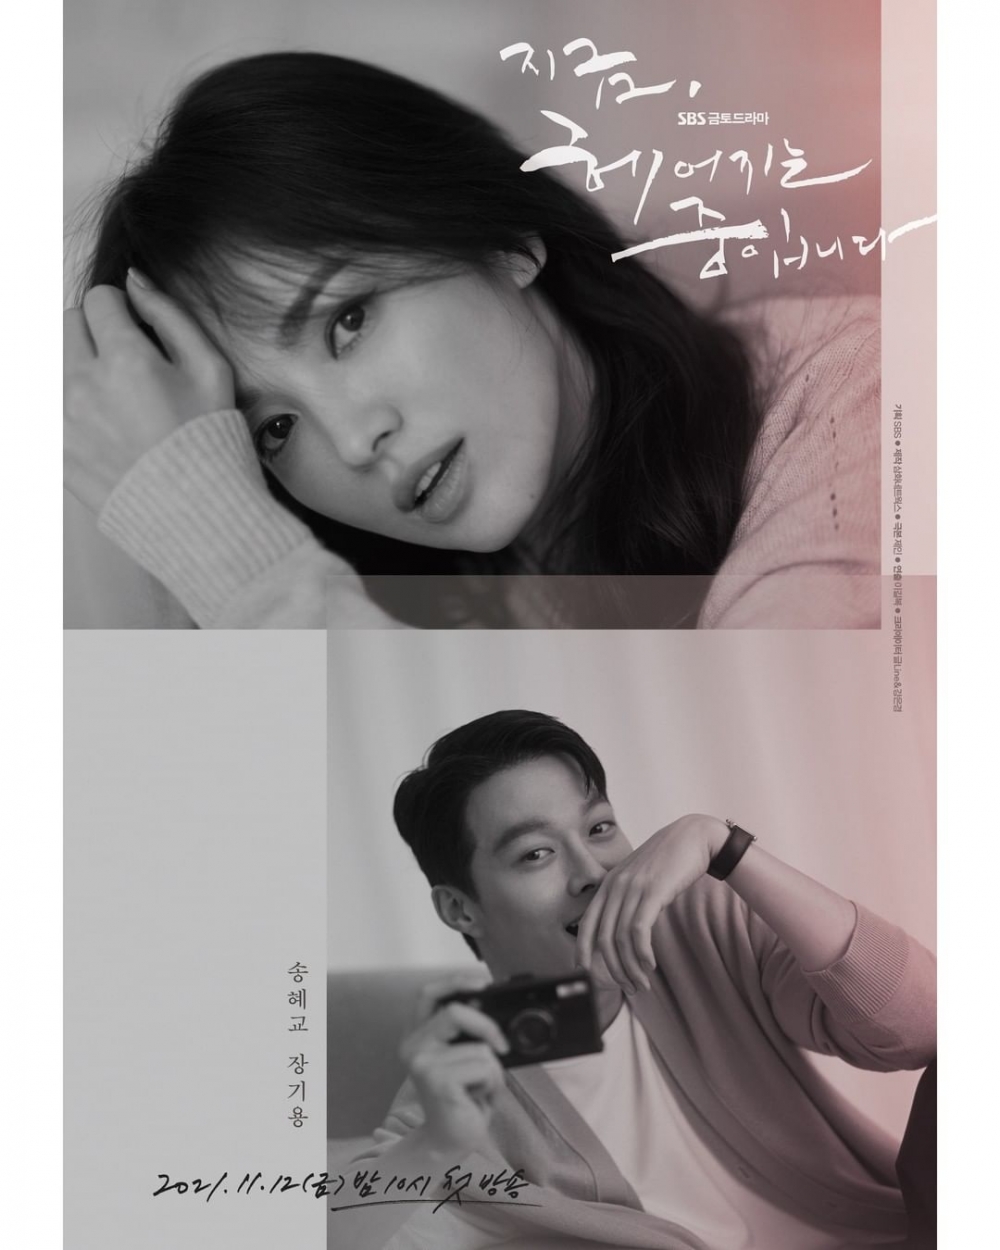 韓劇《現正分手中》描述一段寫作「離別」、讀成「愛情」的酸甜苦辣愛情故事。